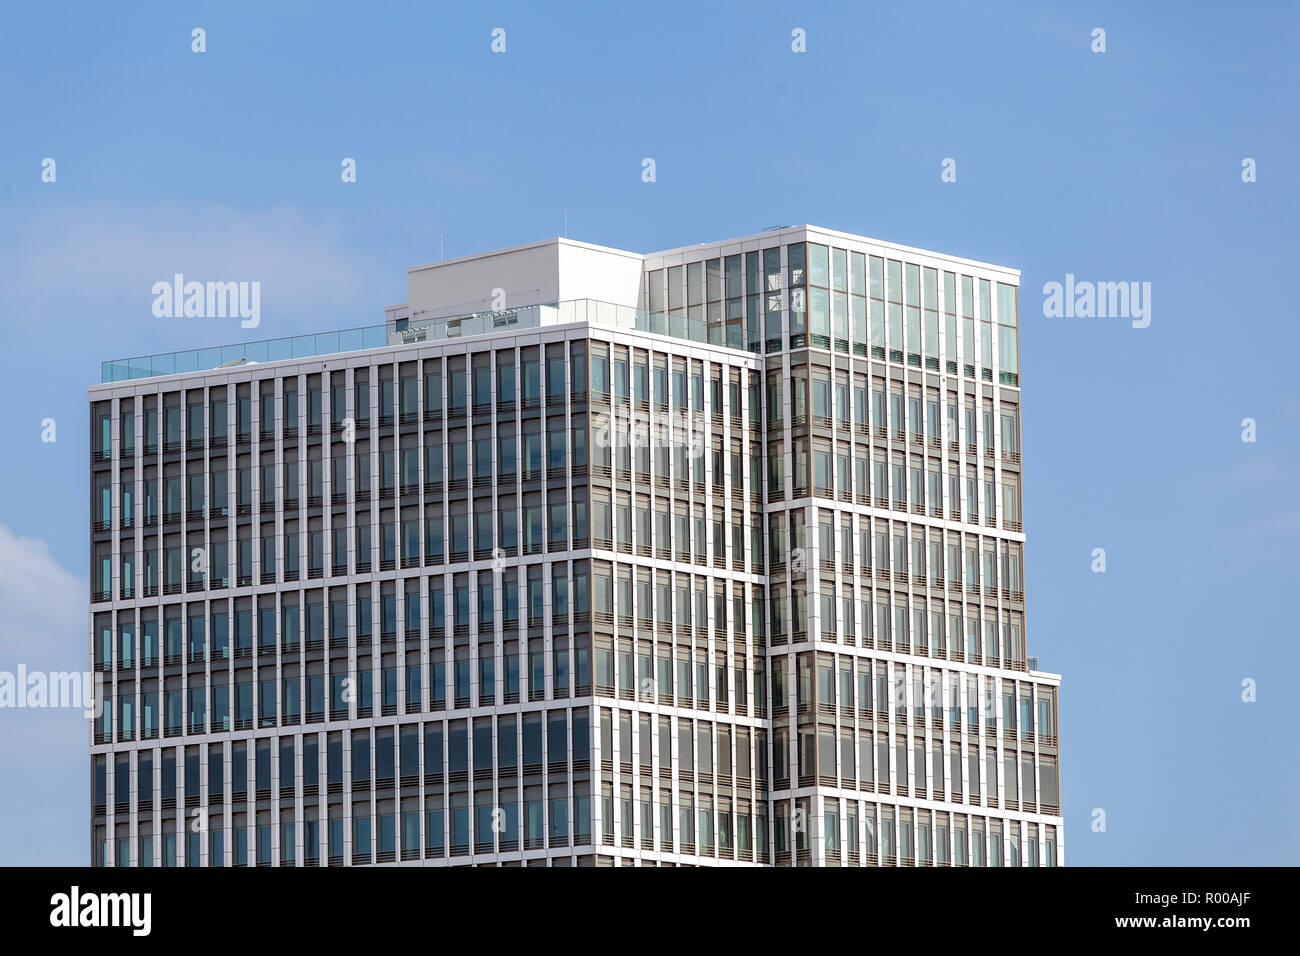 Abstrakte Fassade eines modernen Bürogebäudes ad Amburgo, Deutschland Foto Stock